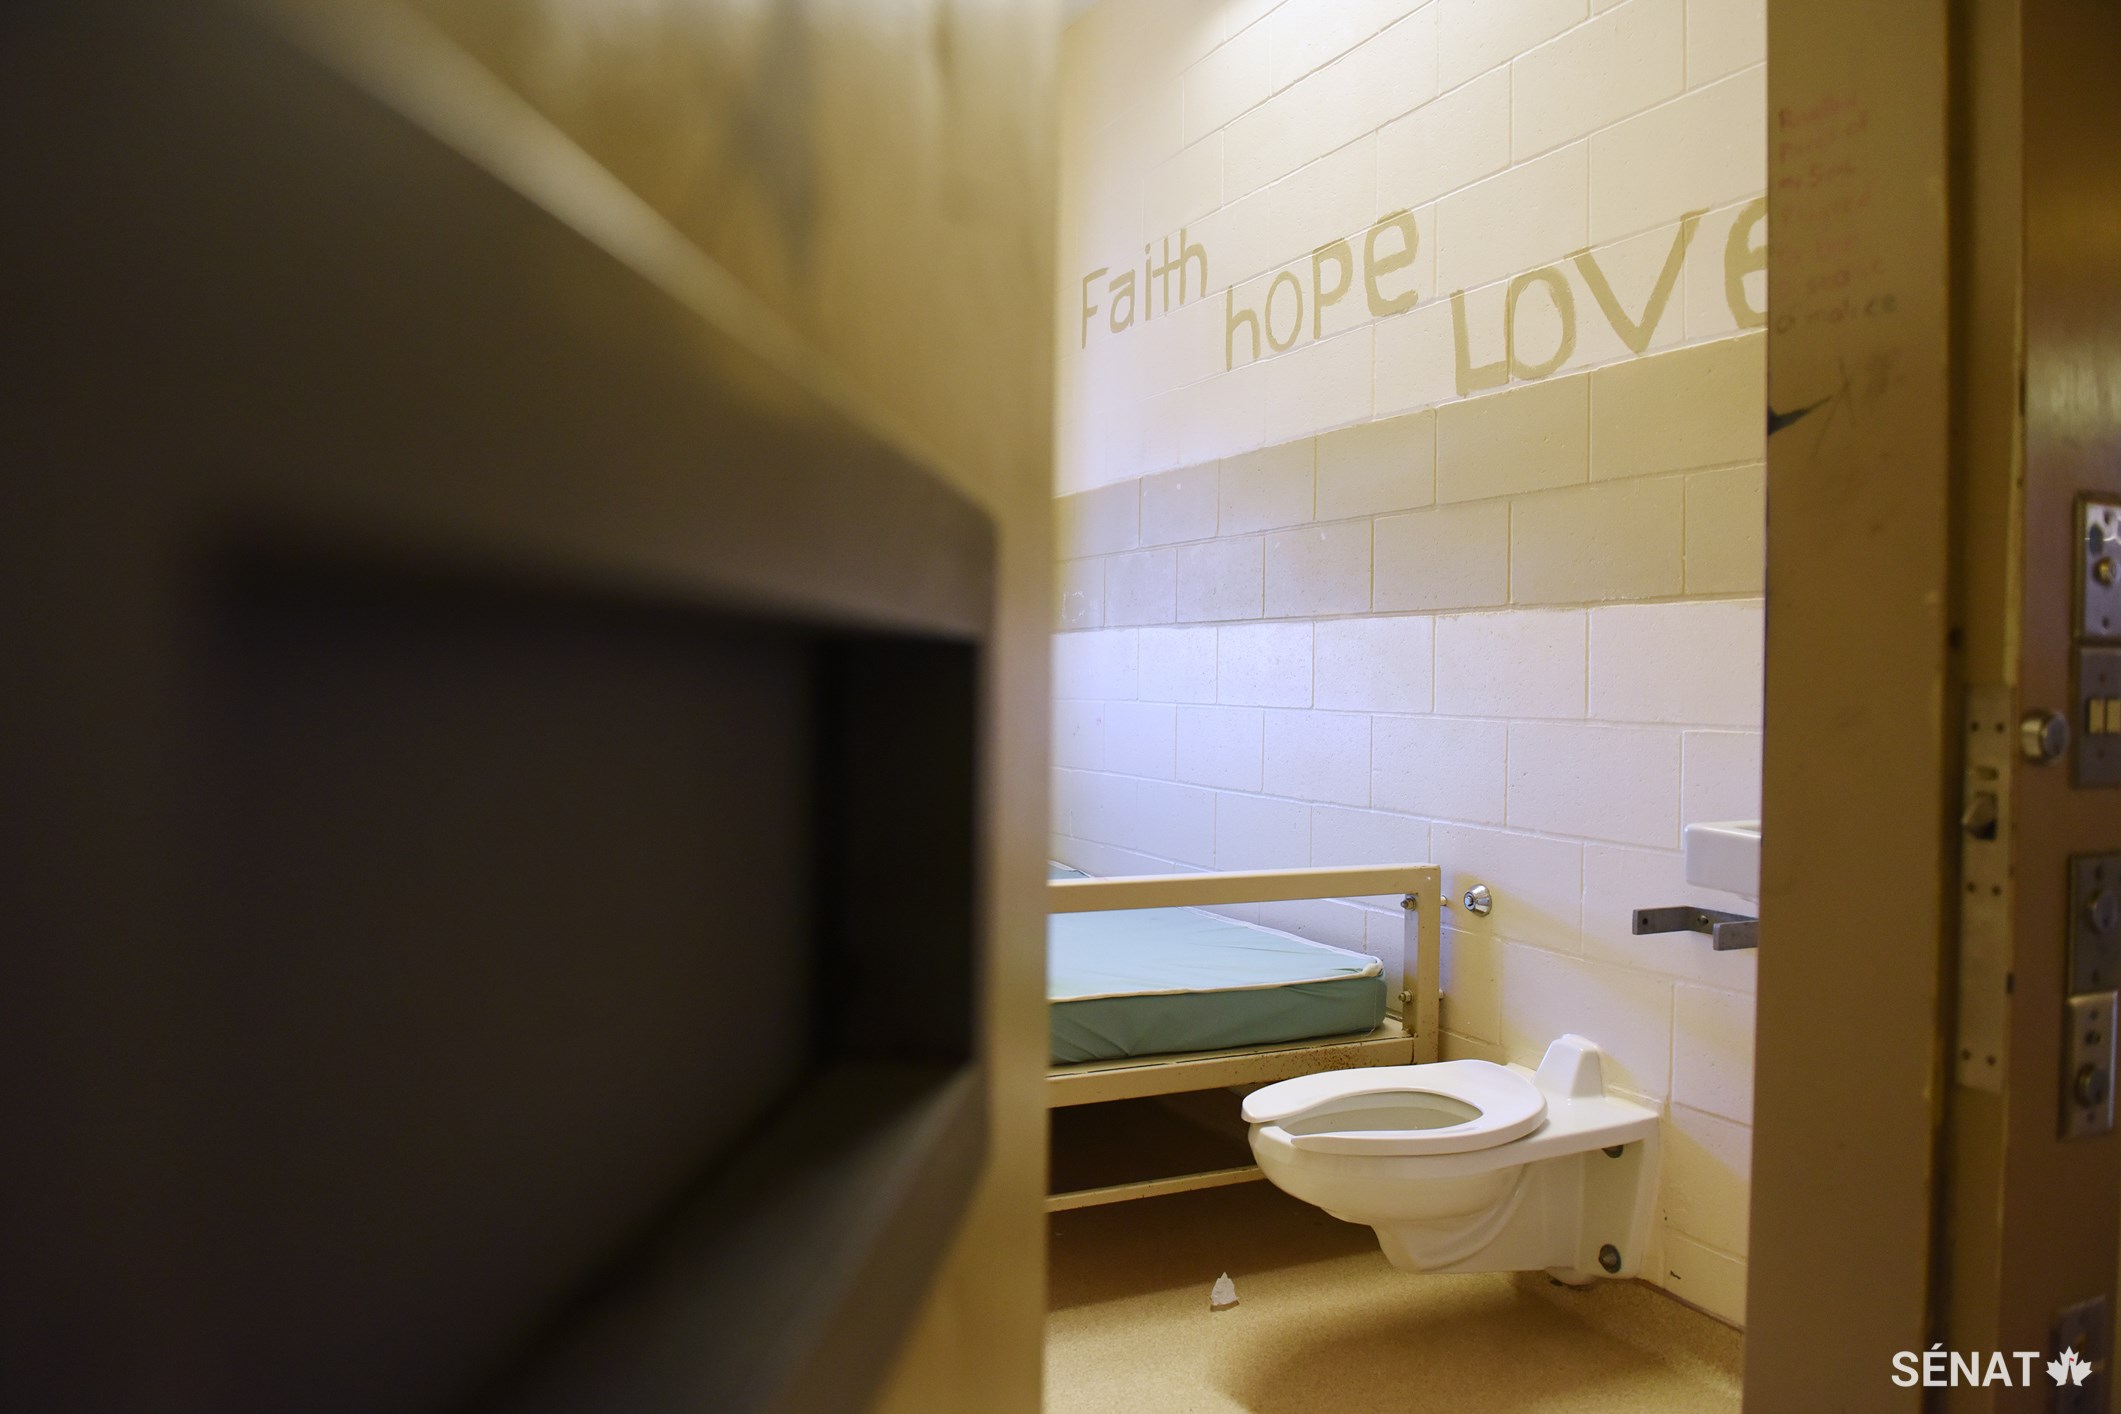 Les messages inspirants qu’une prisonnière a peints à la main sont visibles sur le mur de sa cellule.